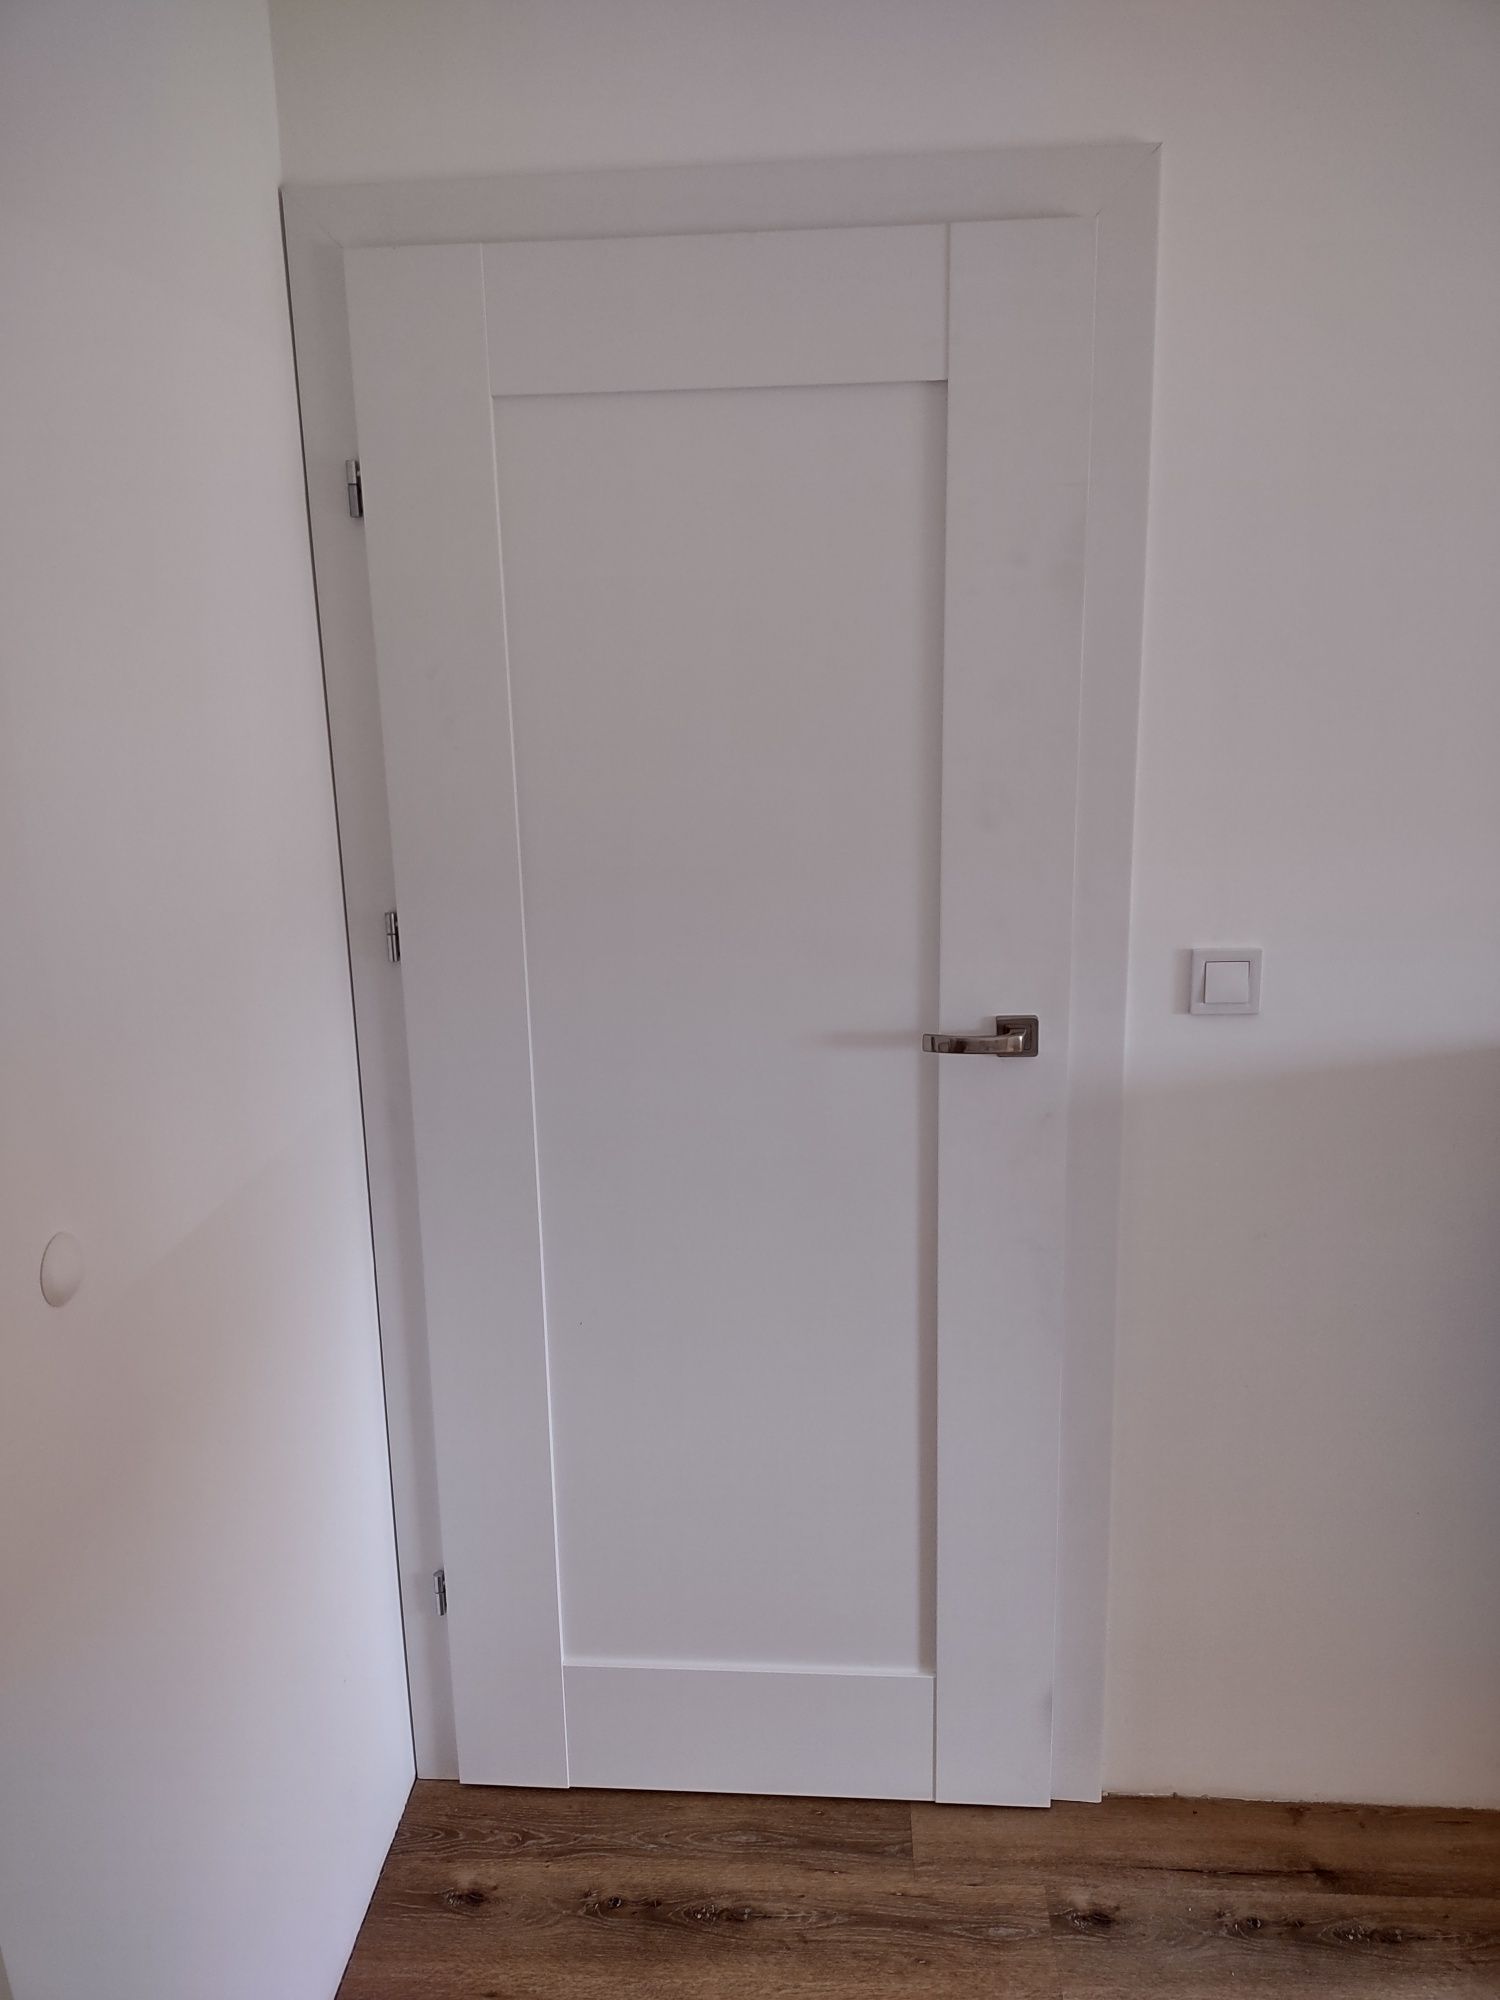 Drzwi DRE Estra 5 80 lewe z oscieżnicą przylgową regulowaną 120-140